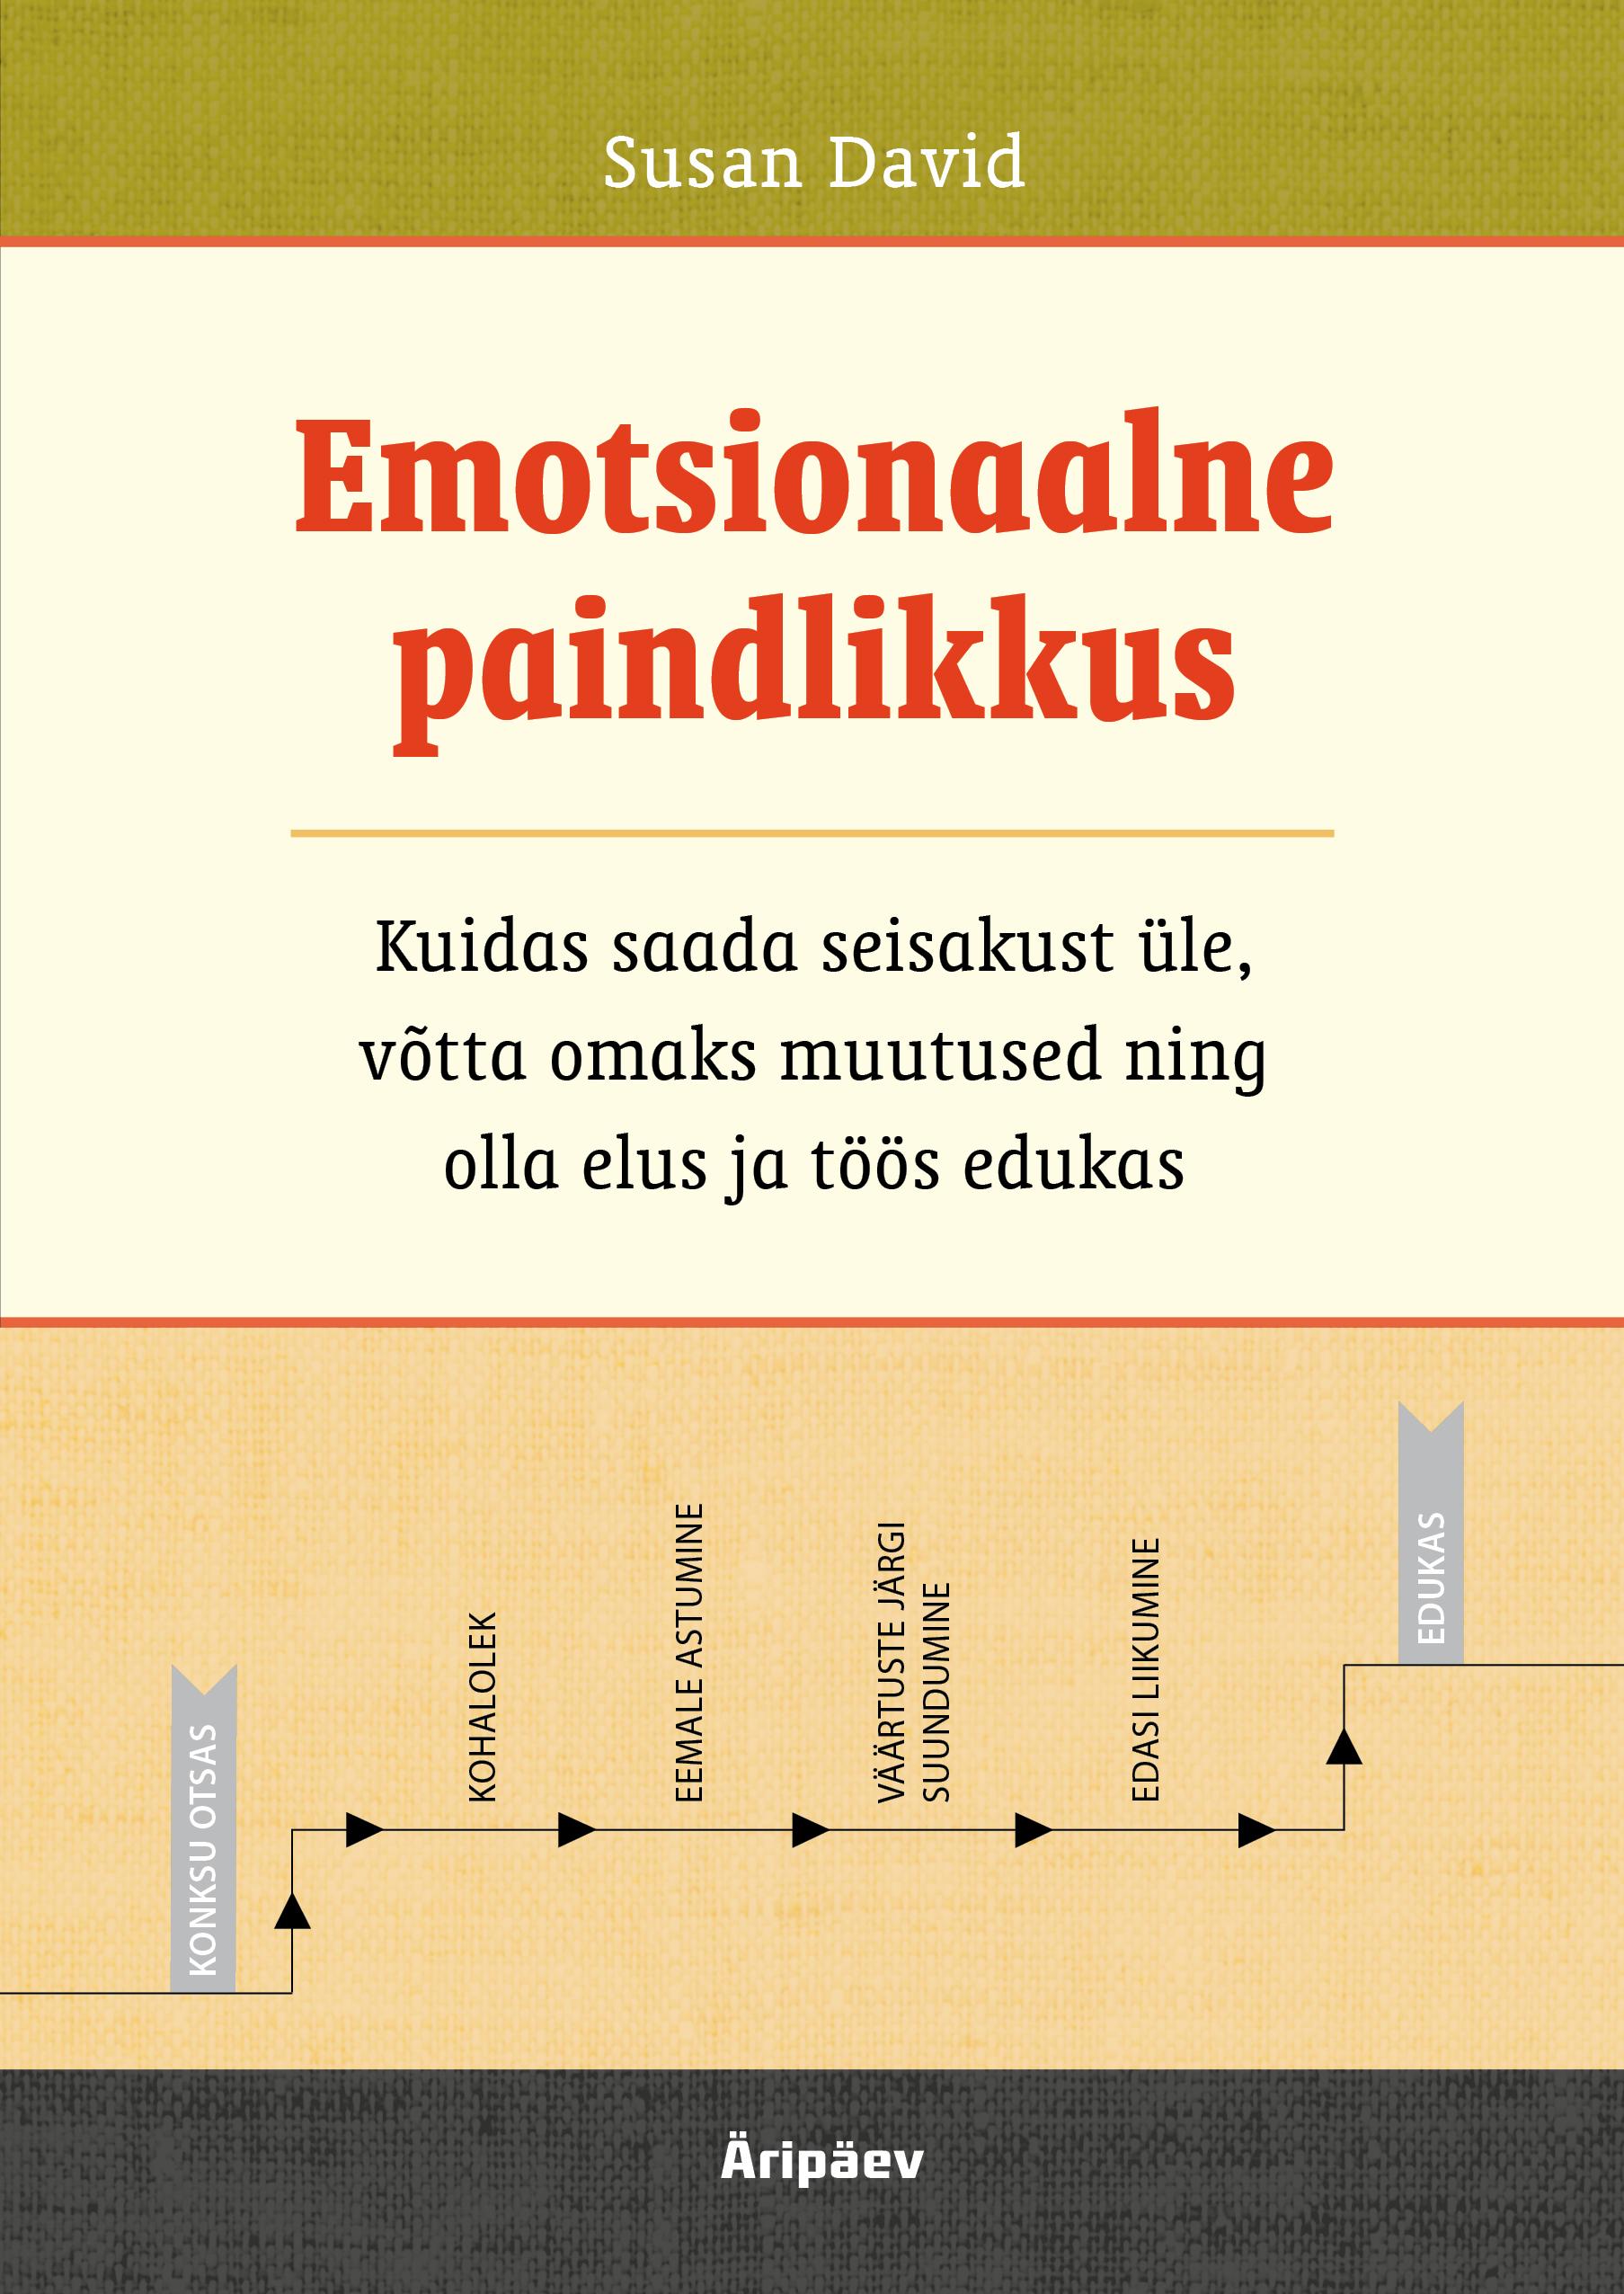 E-raamat: EMOTSIONAALNE PAINDLIKKUS